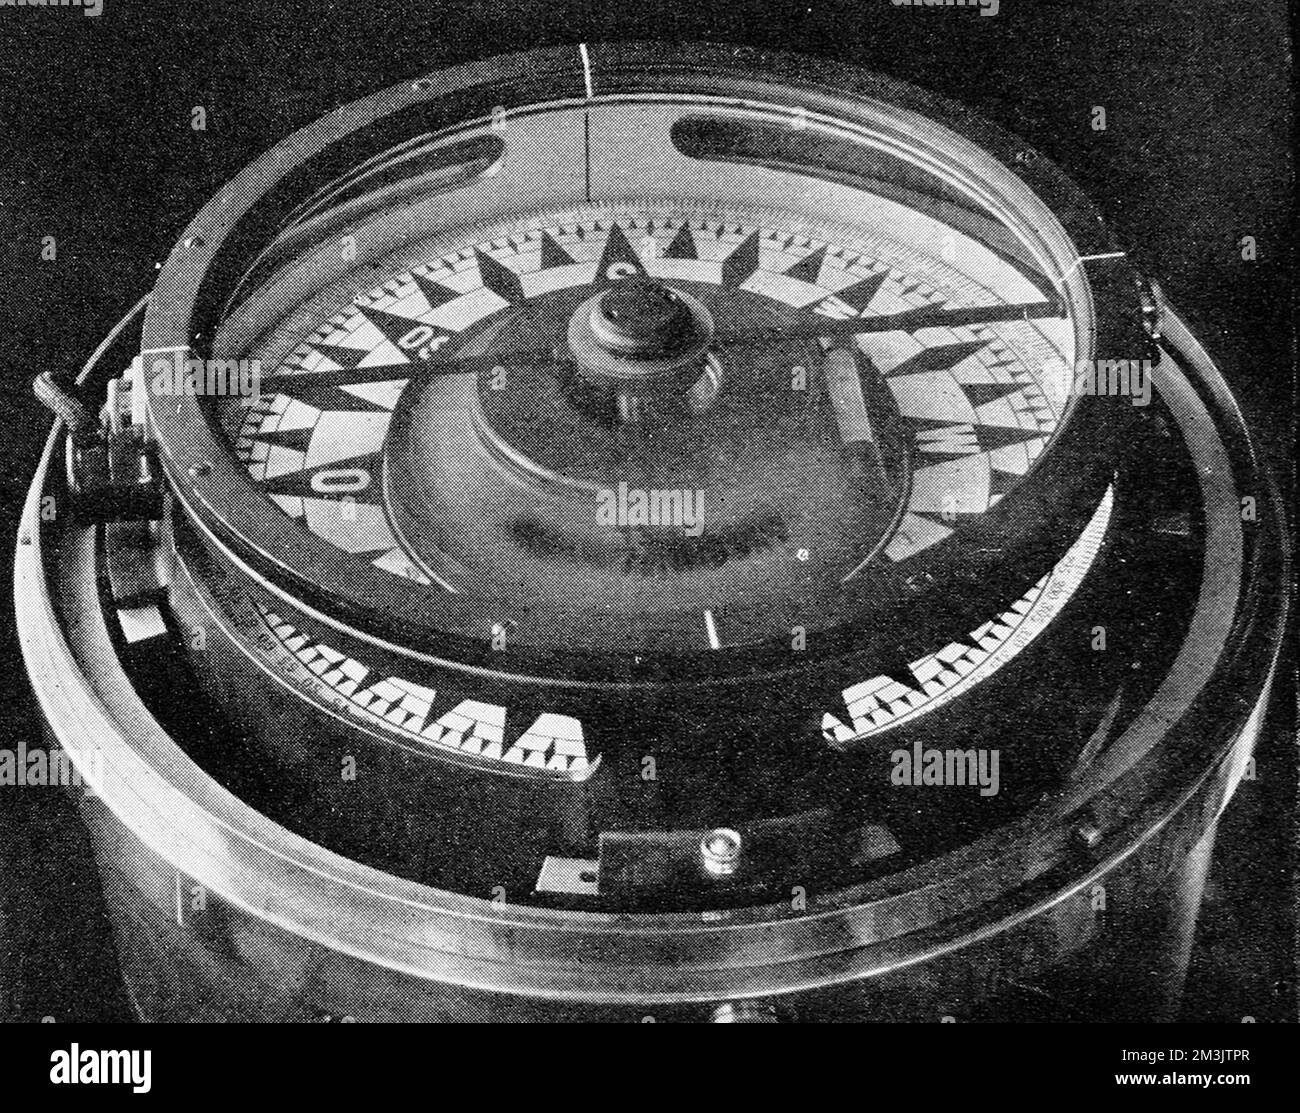 Photographie d'une nouvelle boussole gyrostatique Anschutz, février 1912. Ce type de compas devait être nettement plus efficace que les compas précédents en termes de capacité à fournir une lecture du nord vraie et cohérente. 1912 Banque D'Images